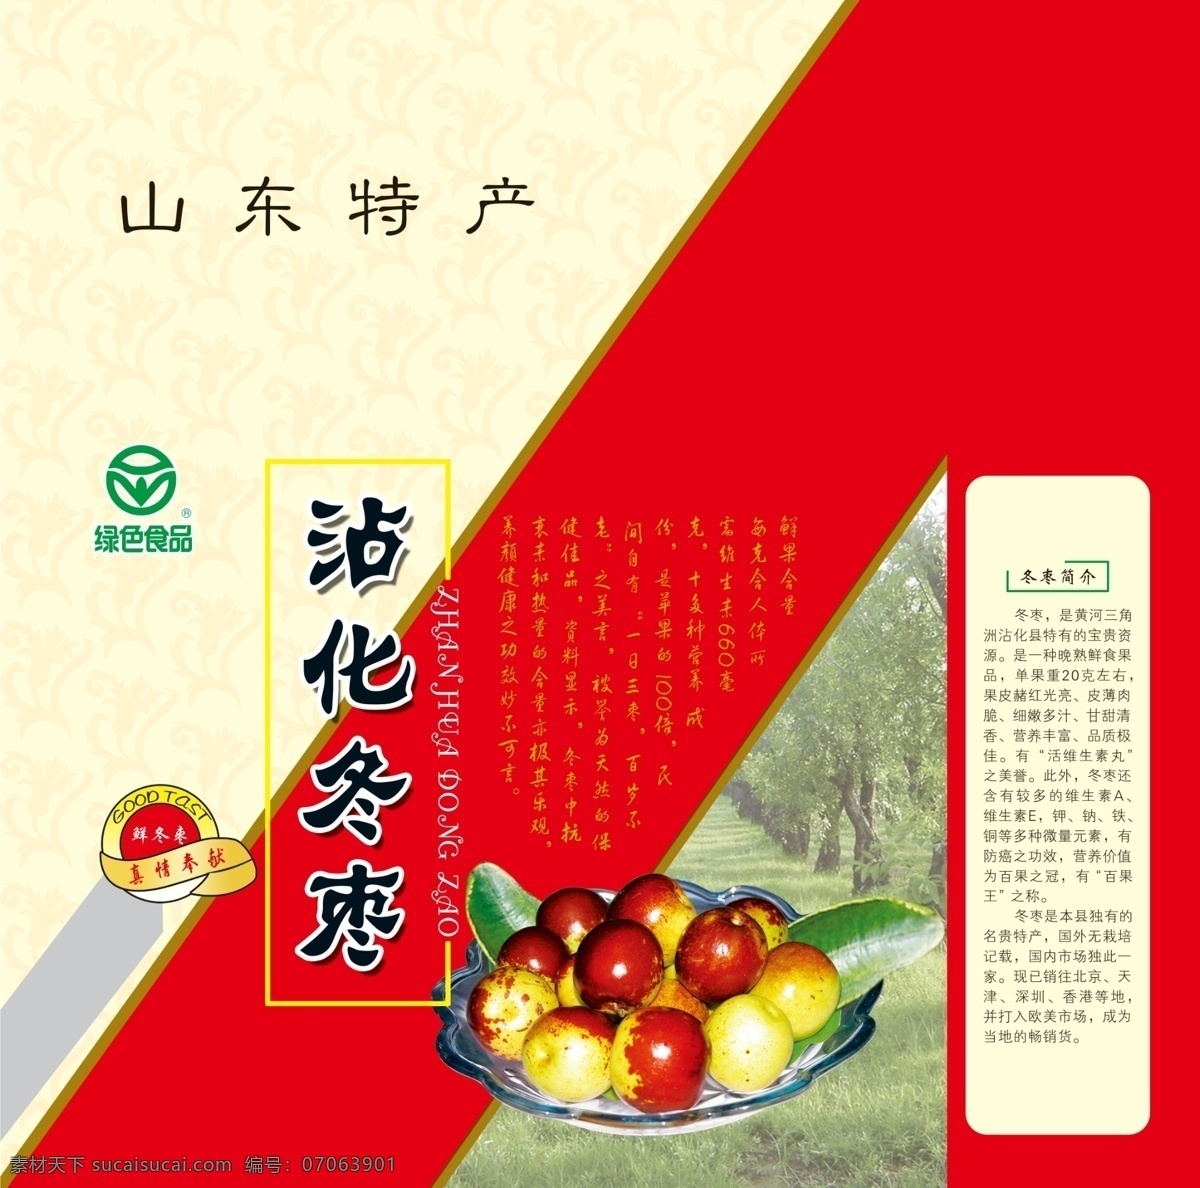 冬枣包装 模版下载 冬枣 枣林 绿色食品 包装设计 广告设计模板 源文件